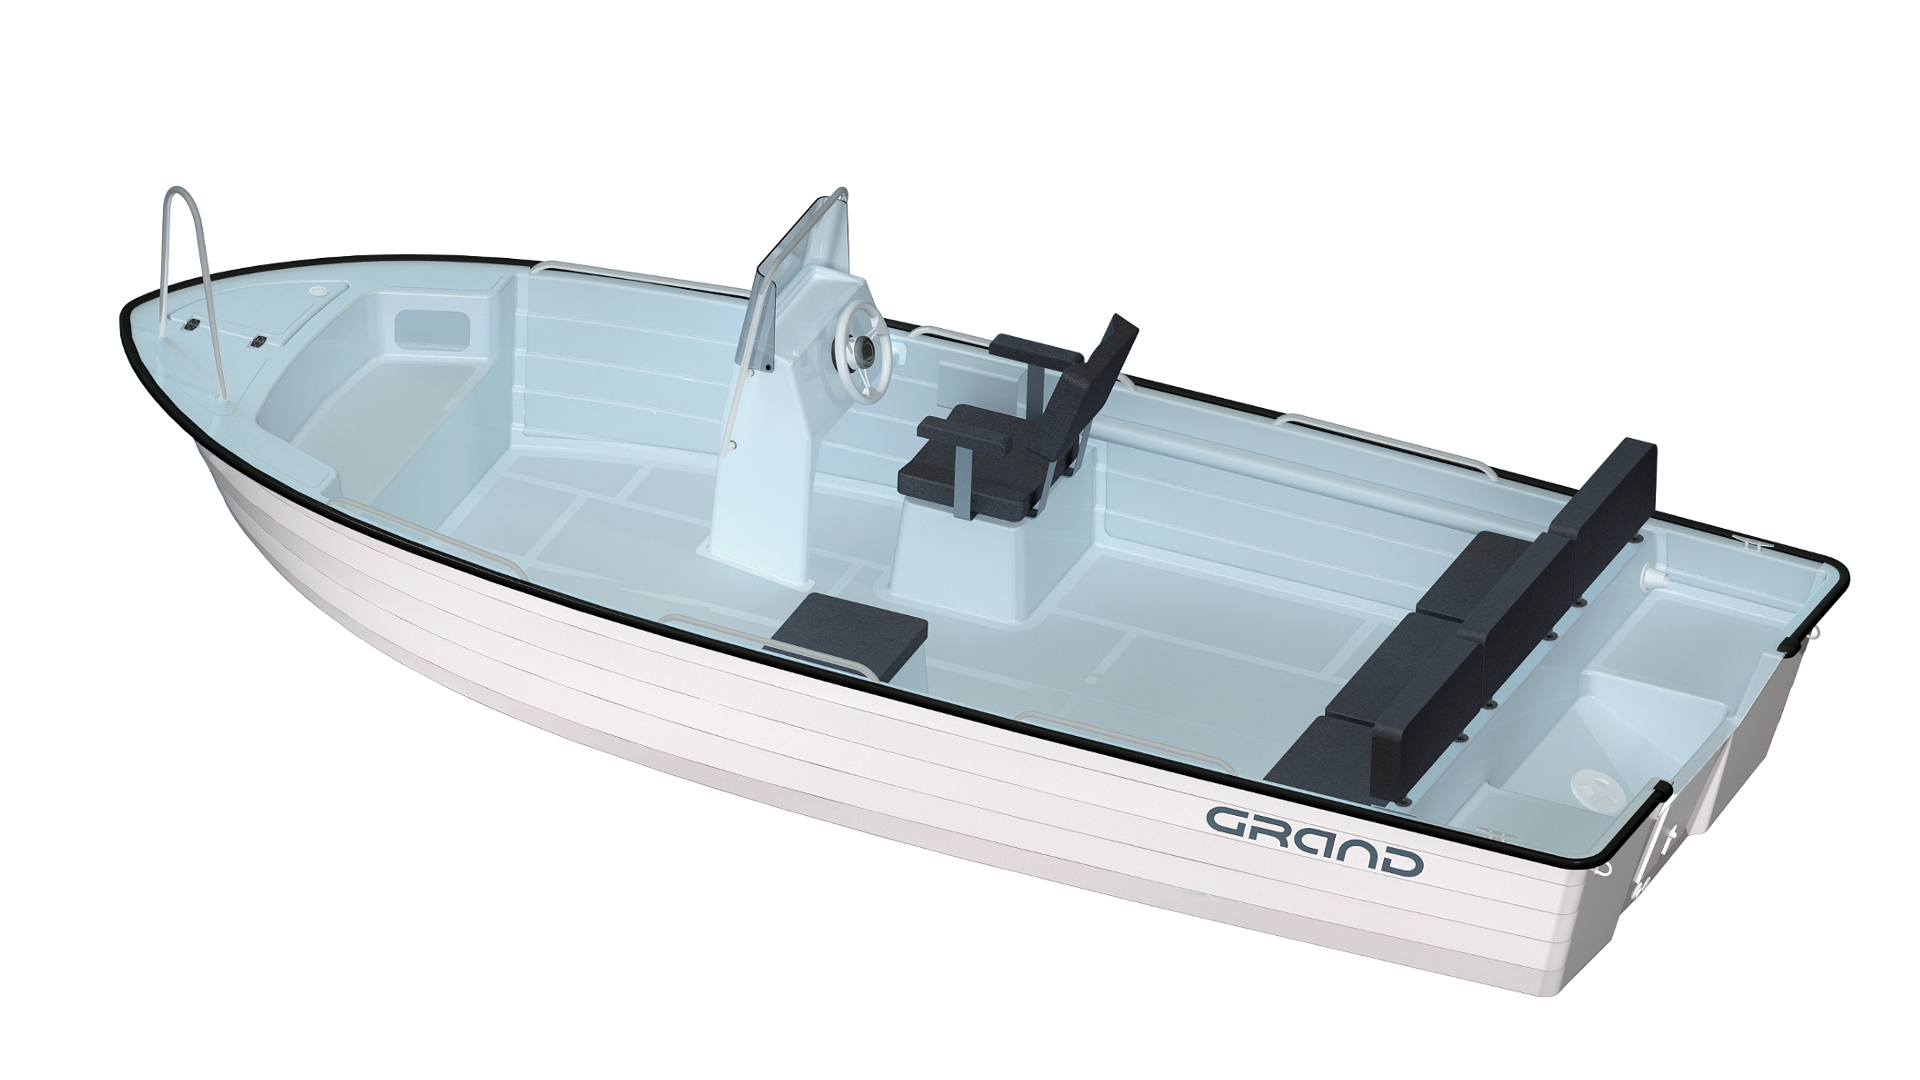 Стеклопластиковая моторная лодка GRAND Nautilus N585, GRAND N585, GRAND Nautilus, GRAND Nautilus N585, Стеклопластиковая моторная лодка GRAND, Моторная лодка GRAND, Стеклопластиковая лодка GRAND, Лодка для рыбалки, Лодка для большой компании